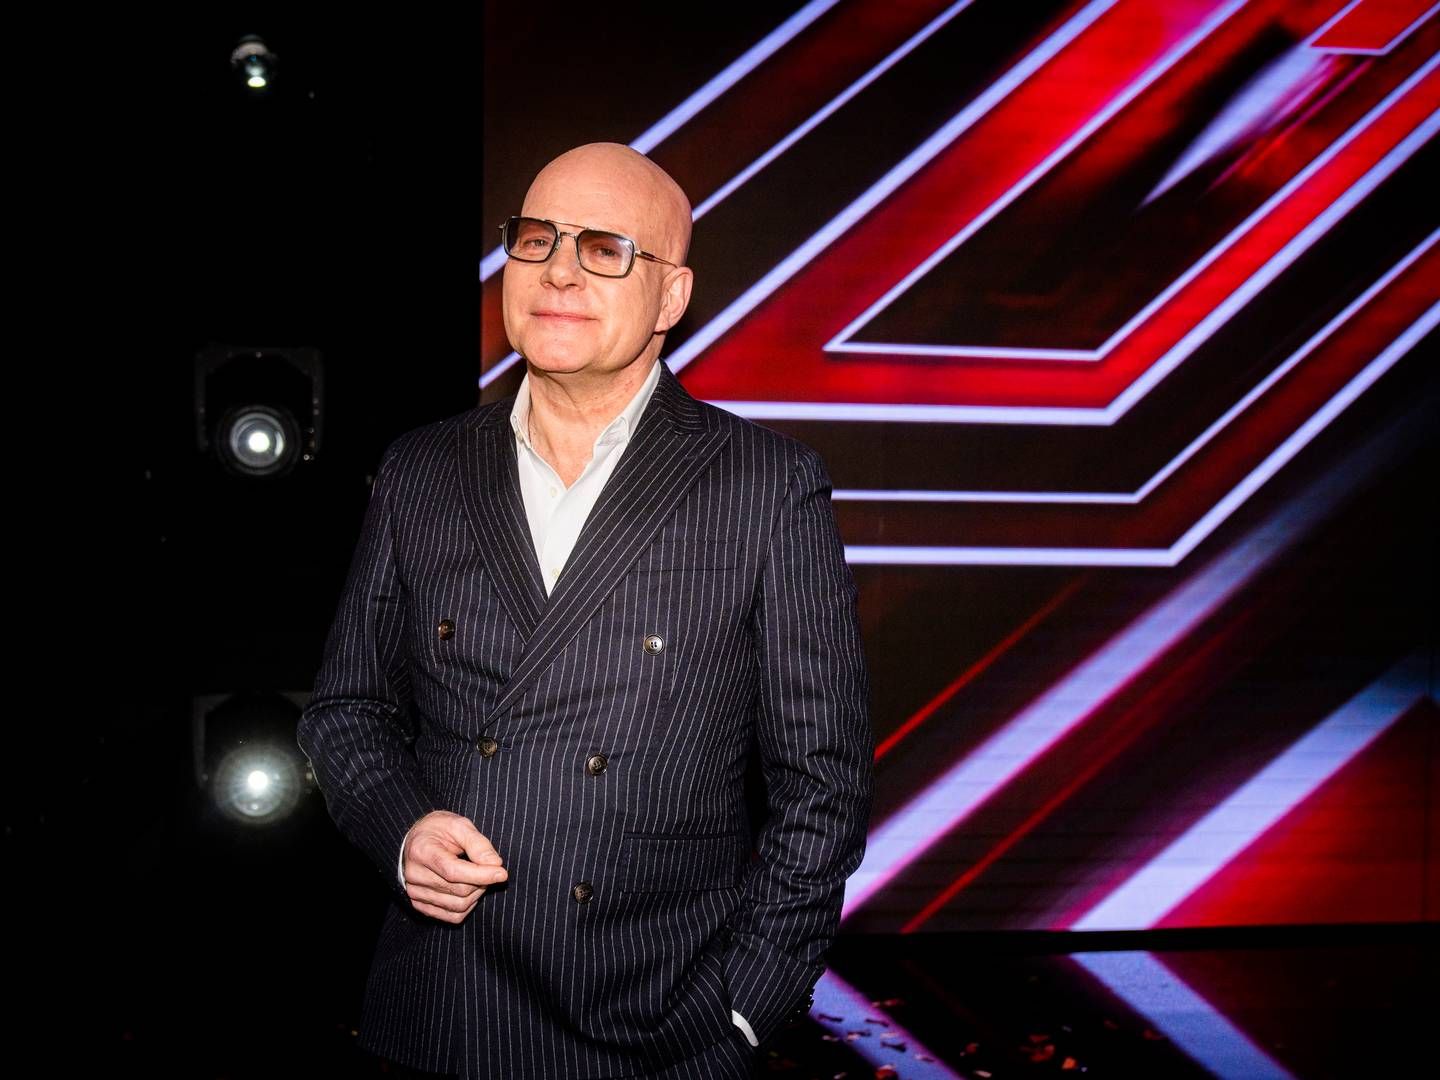 Musikproducer Thomas Blachmann er i den brede offentlighed formentlig bedst kendt som dommer igennem 16 sæsoner af tv-programmet X Factor. | Foto: Jonas Olufson